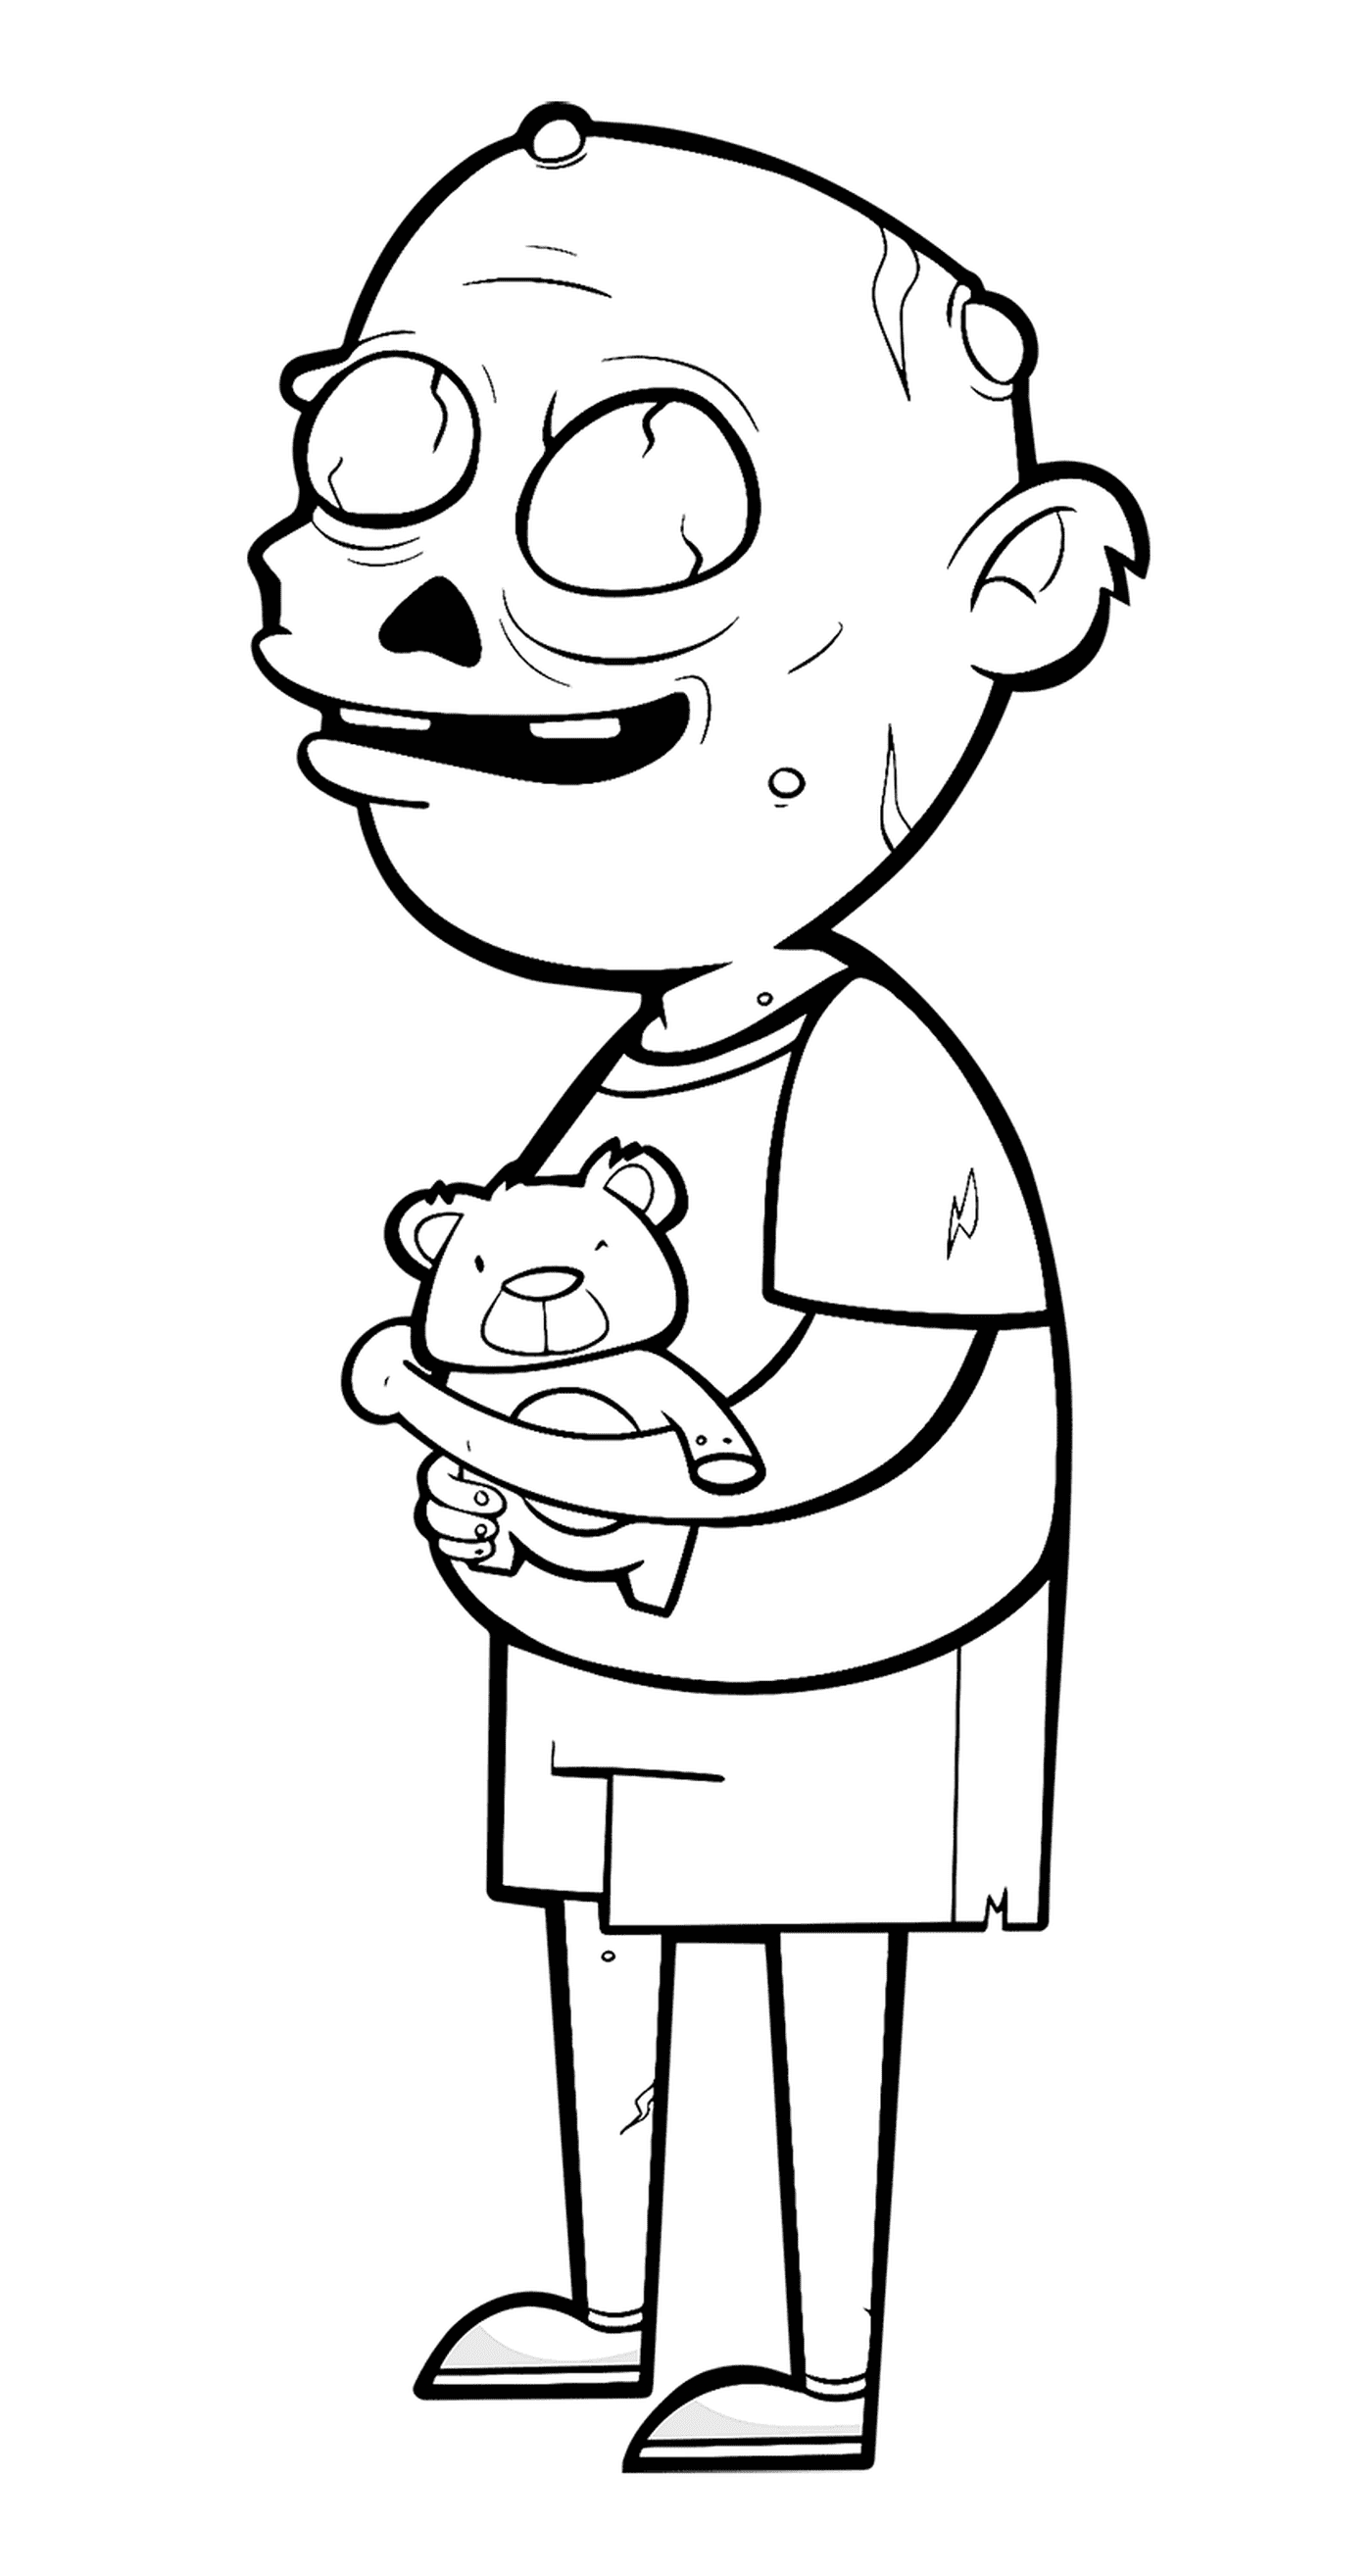  A zombie holding a teddy bear 